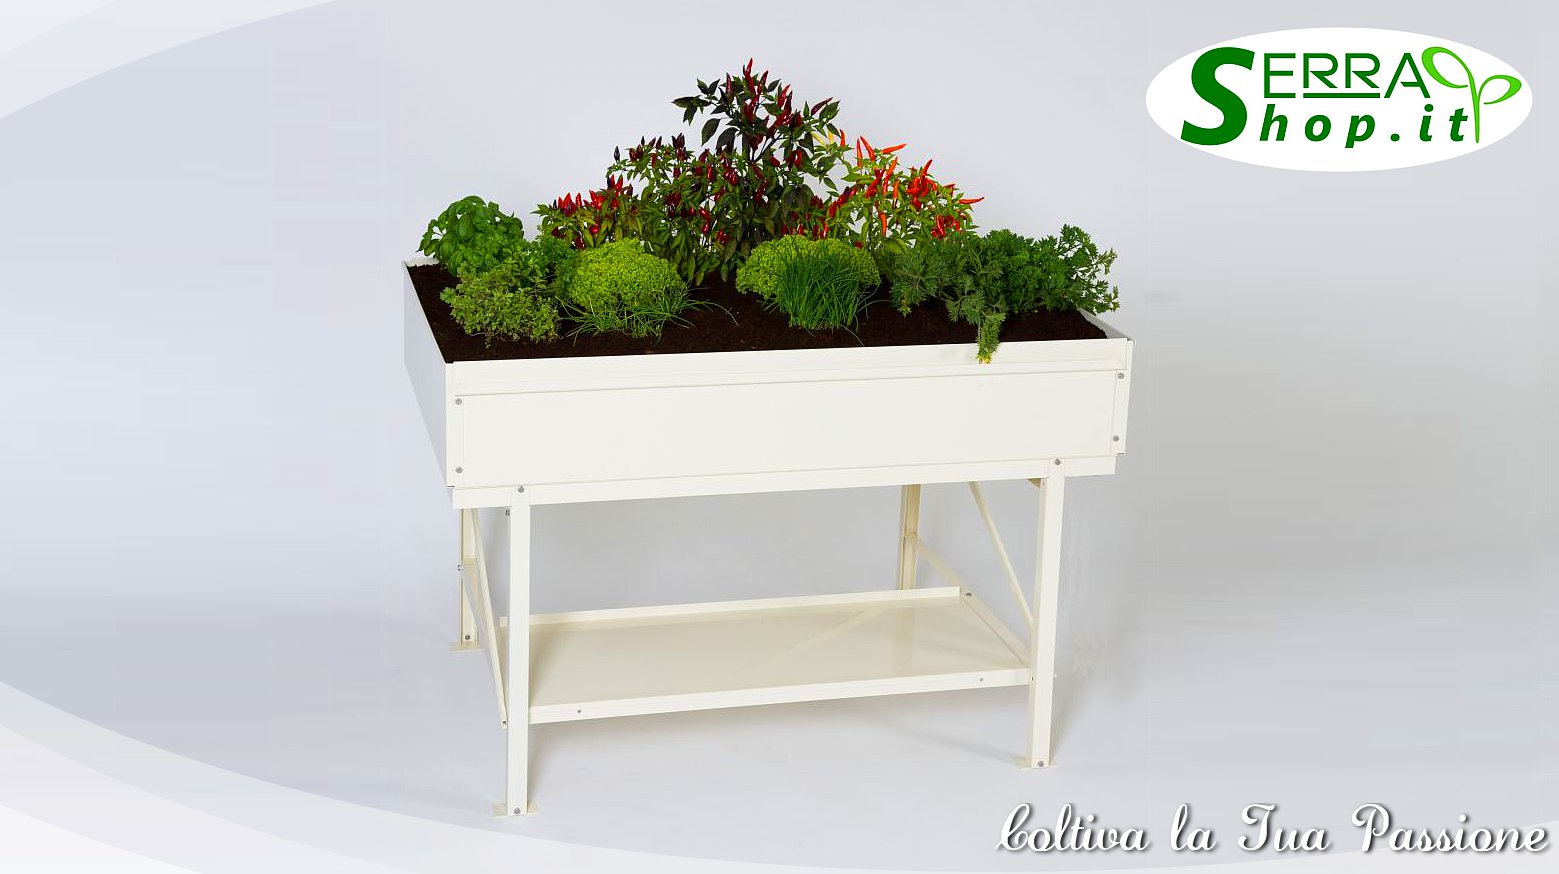 banco tavolo di lavoro semenzaio piante bancone serra serrashop casa giardino